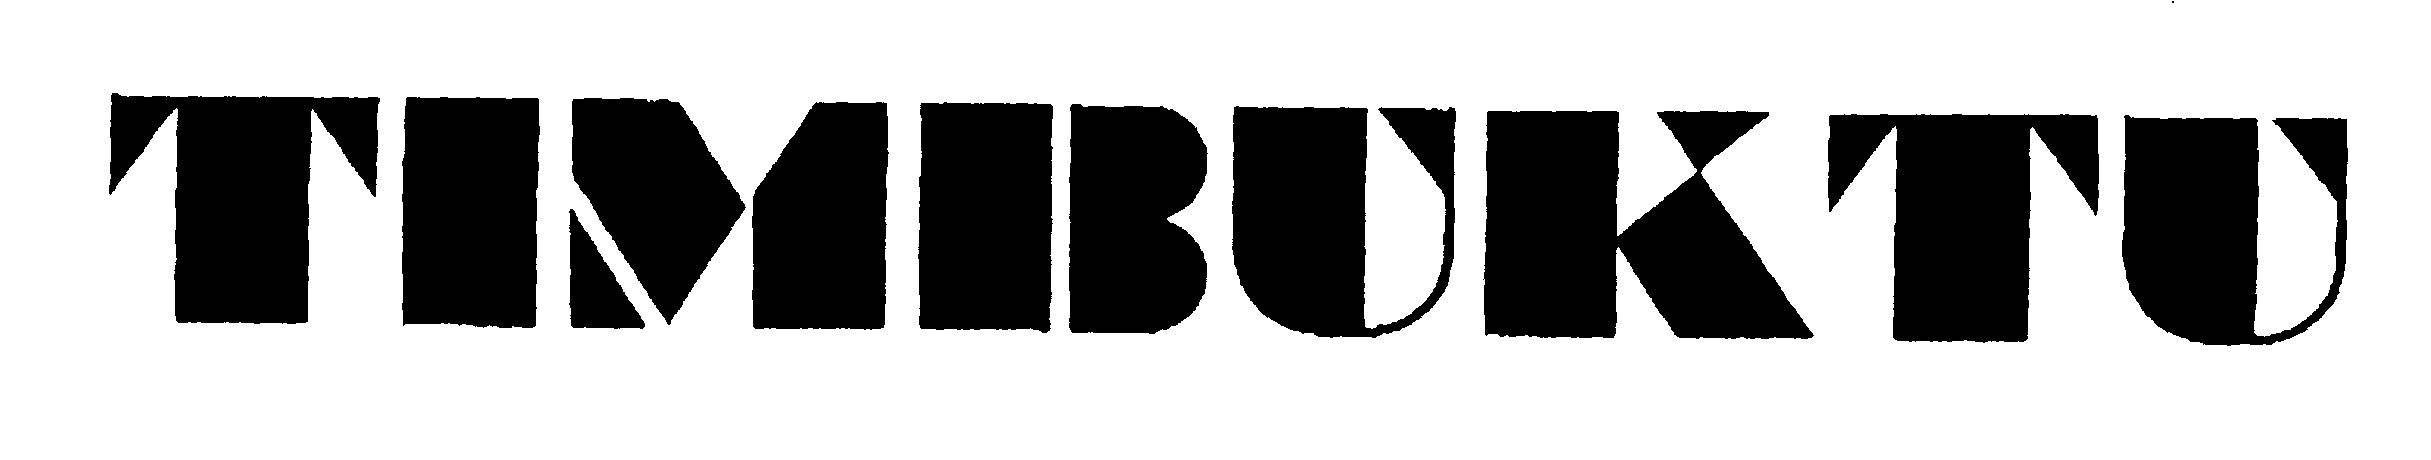 Trademark Logo TIMBUKTU